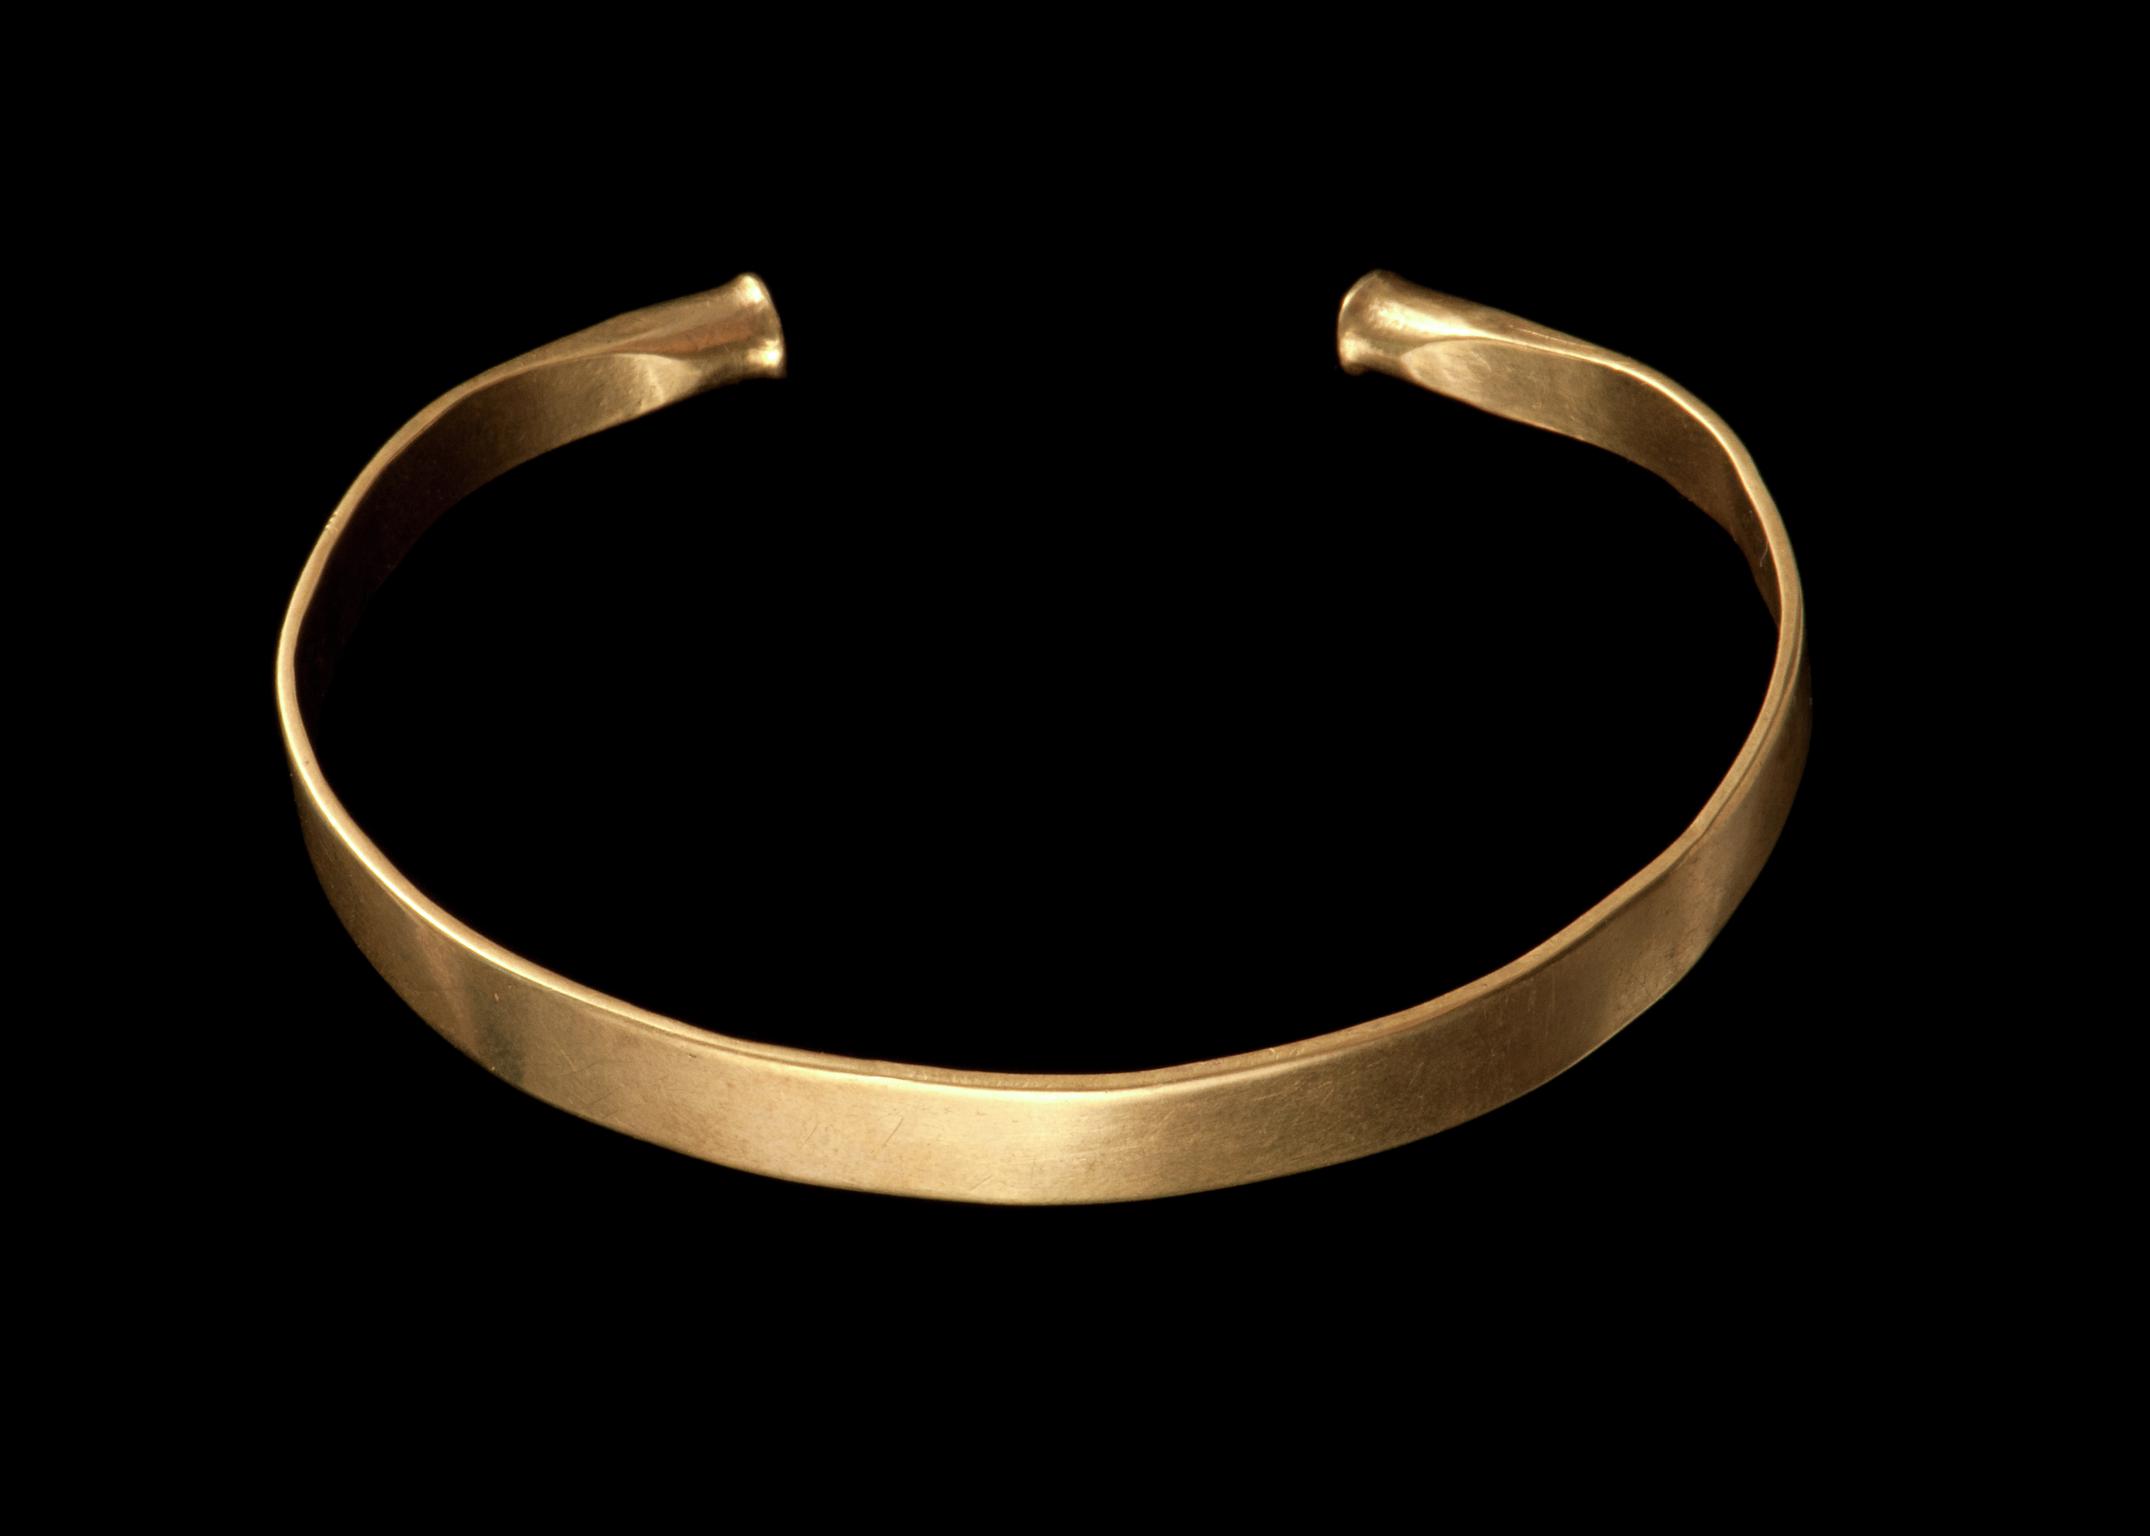 Bronze Age gold bracelet, armlet or anklet